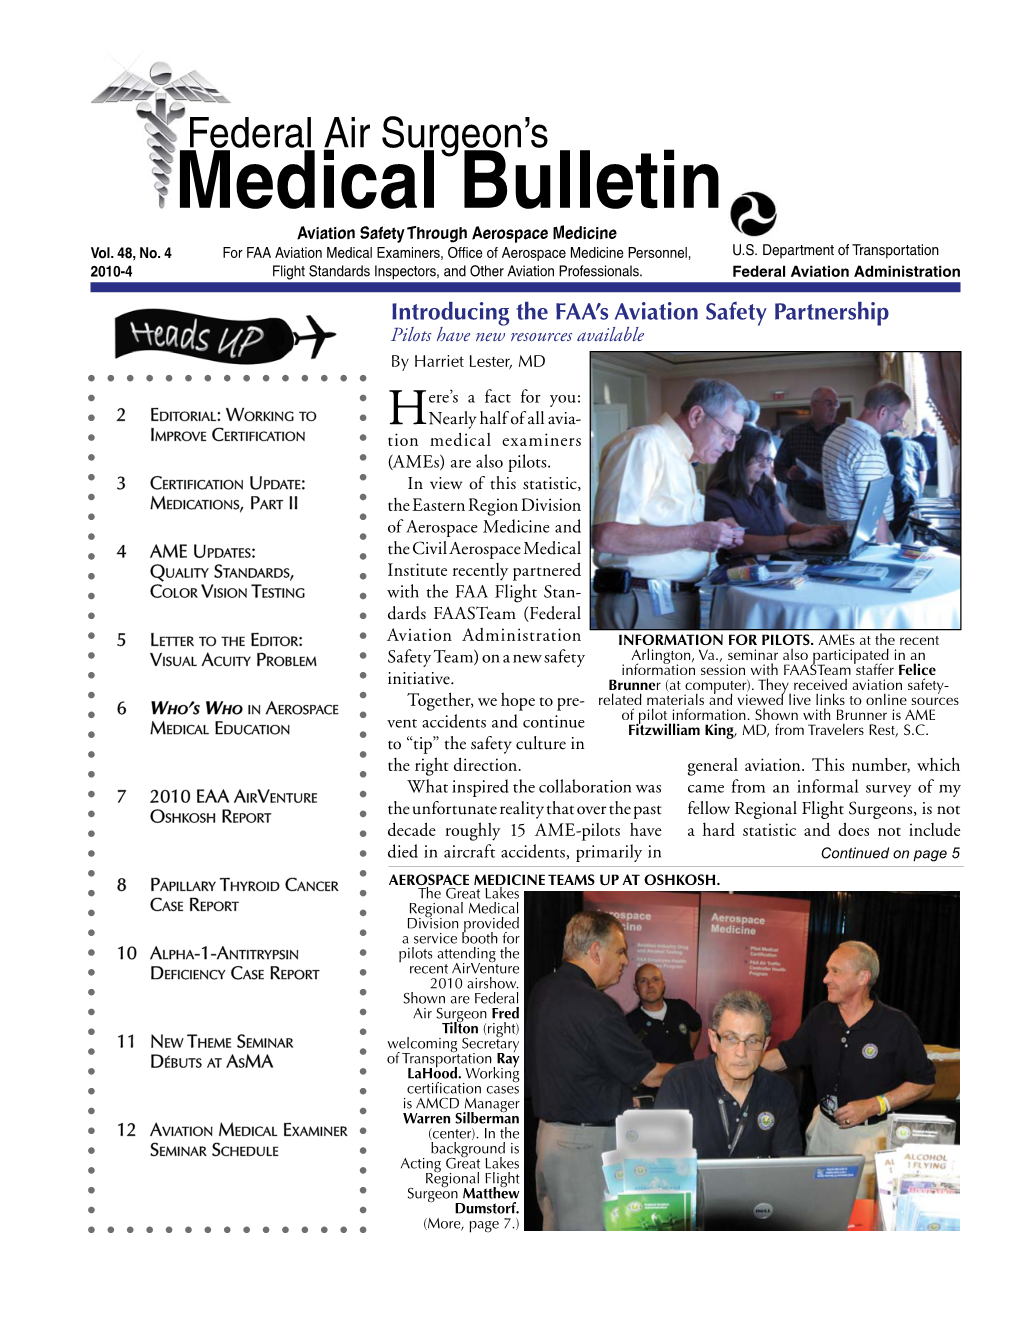 Federal Air Surgeon's Medical Bulletin • Vol